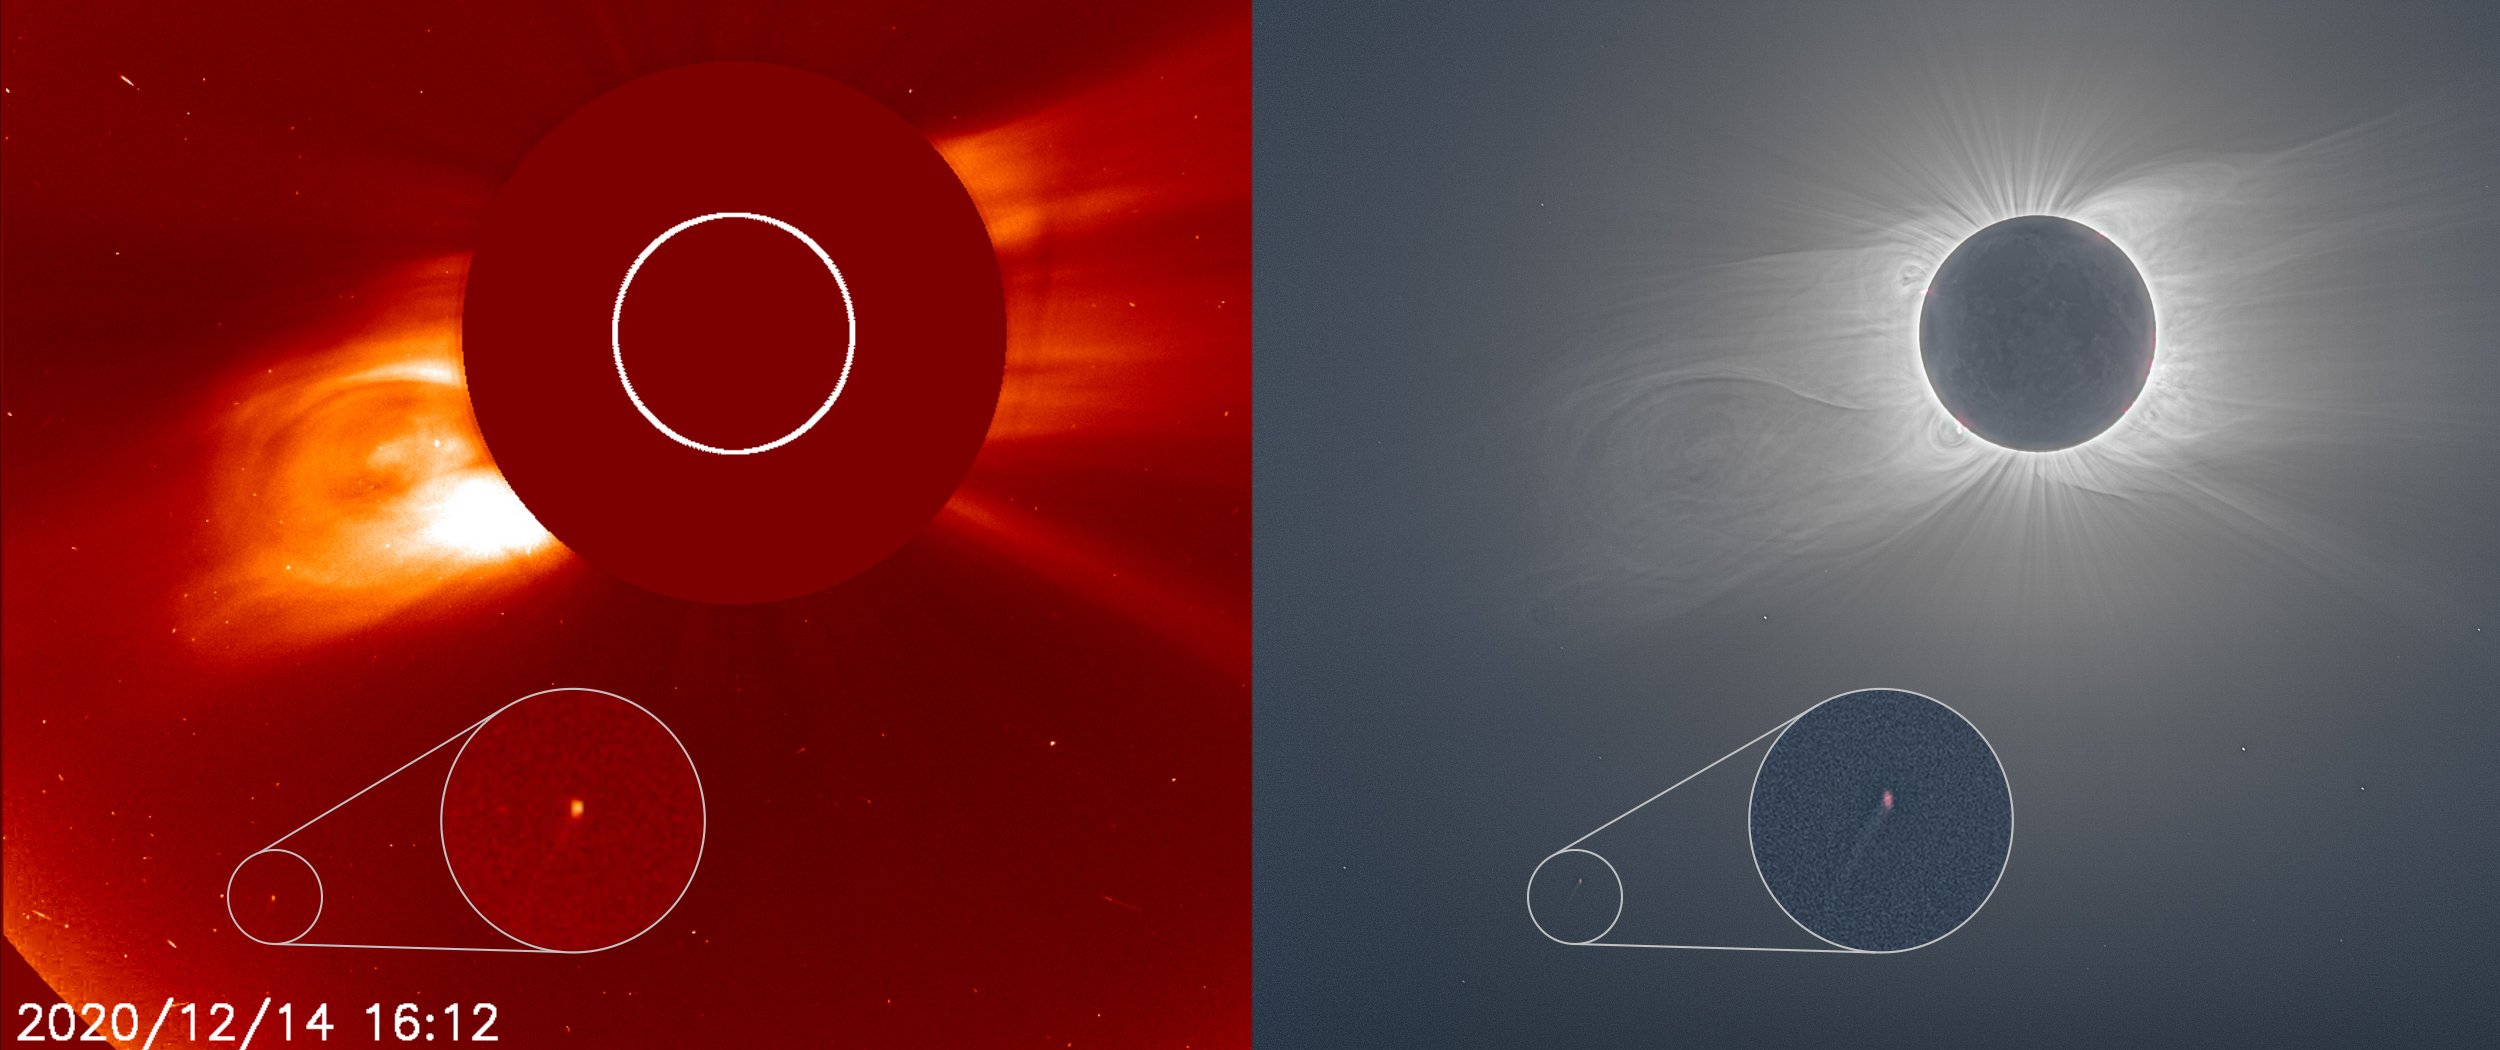 2 つの並べた画像は太陽に近づく彗星を示しており、右側の画像は皆既日食中に太陽のコロナが明るく輝いていることを示しています。